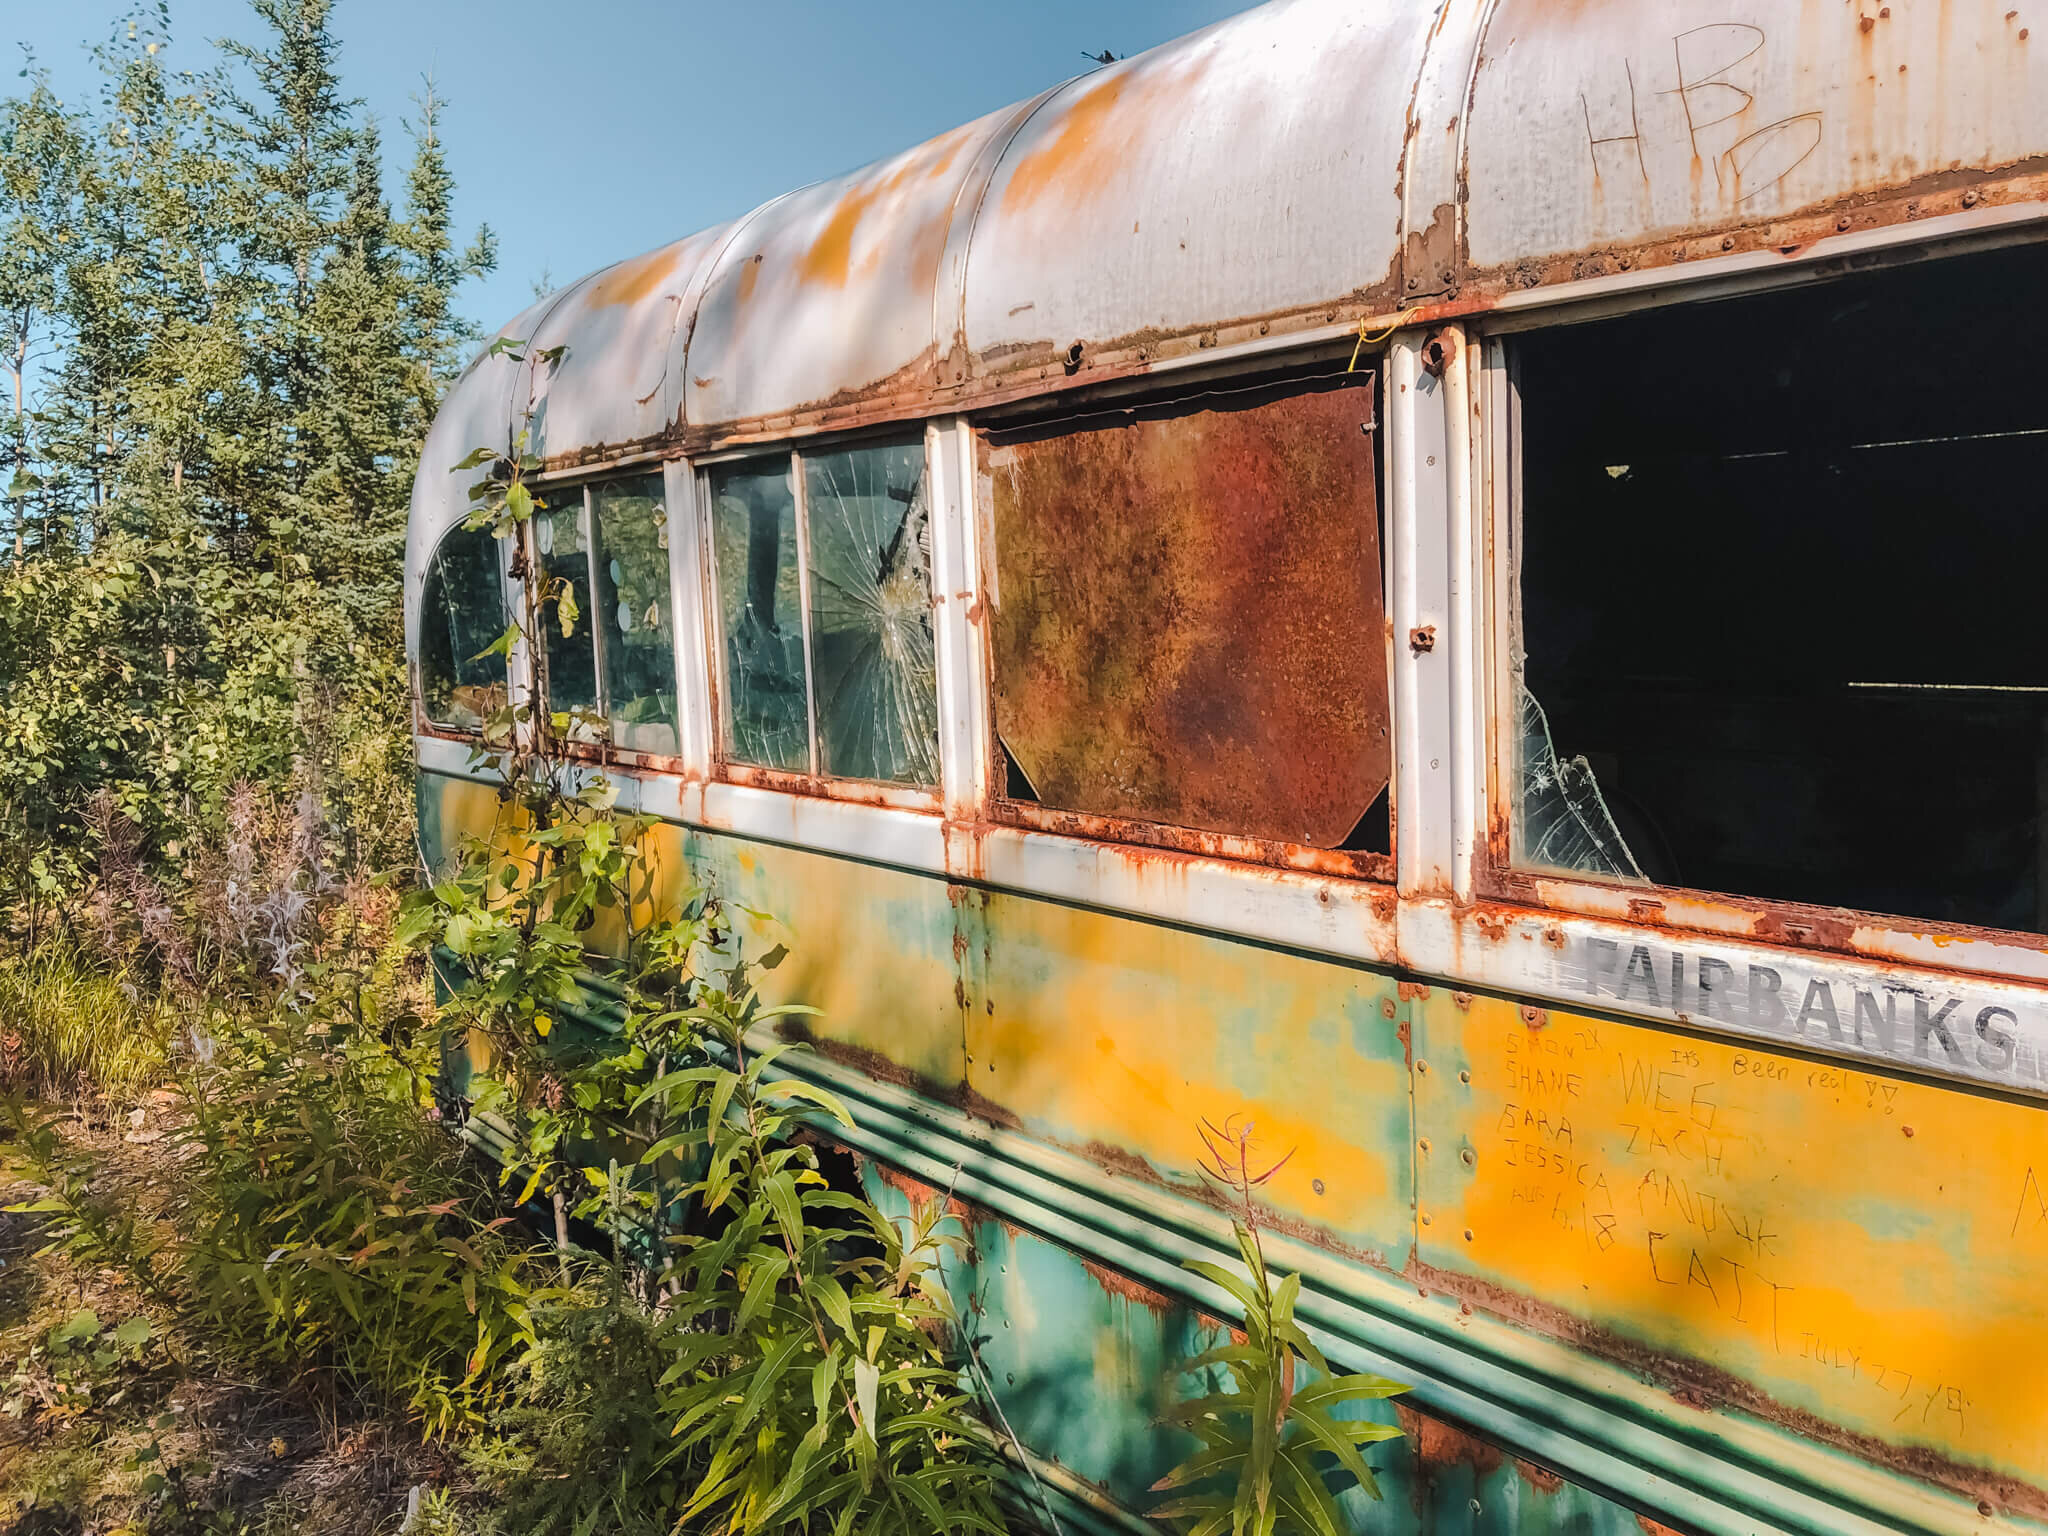 I Hiked To The Magic Bus - Alaska Travel Diary